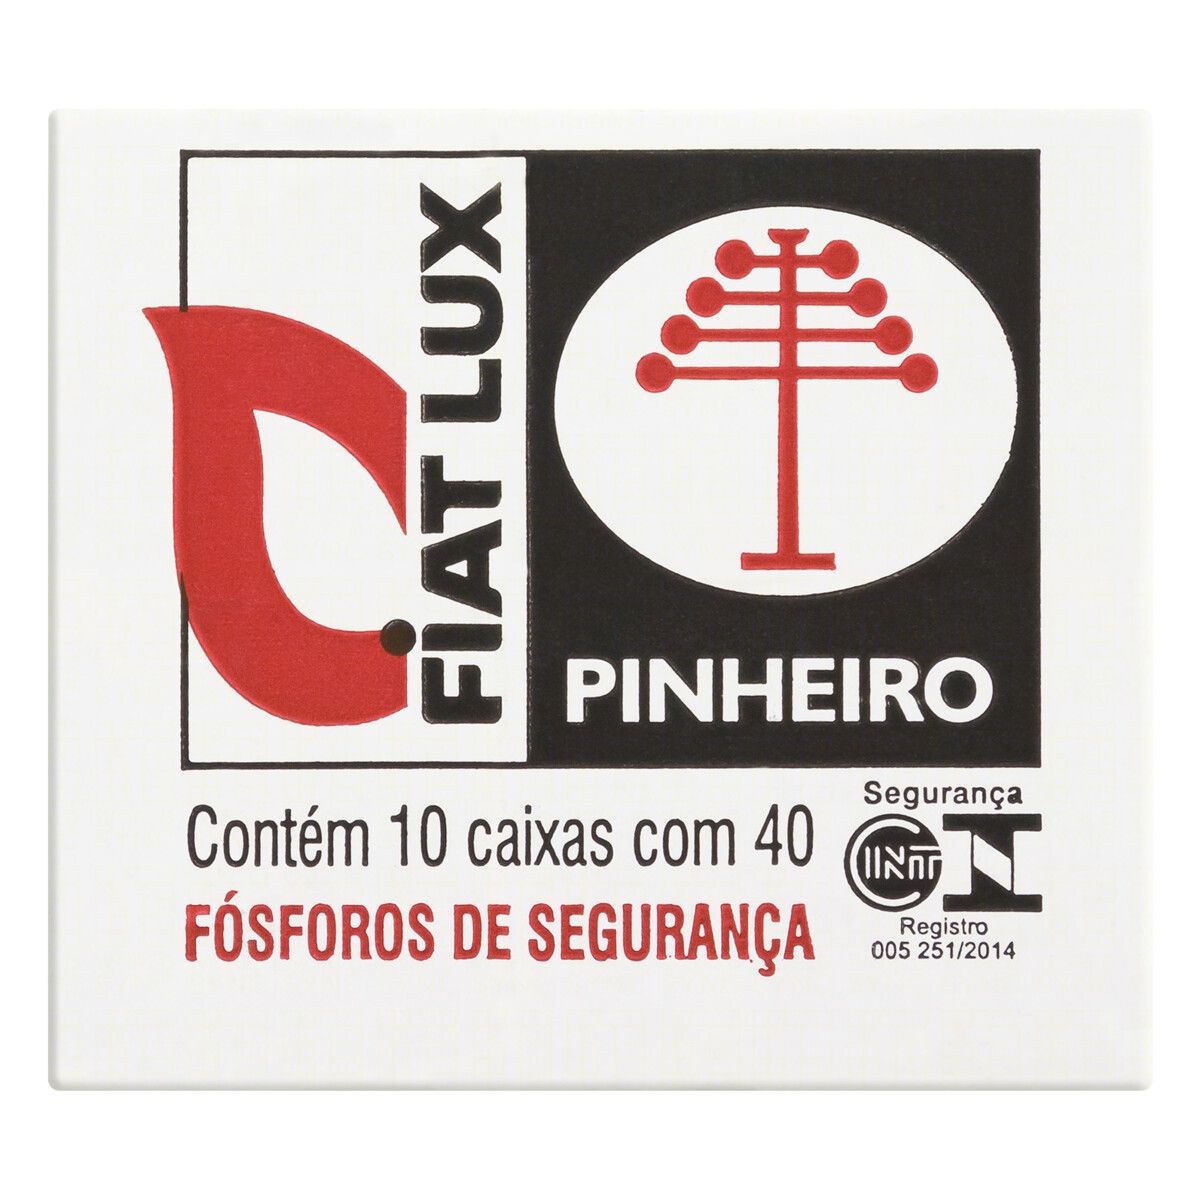 Fósforo de Segurança Fiat Lux Pinheiro 10 Unidades image number 0